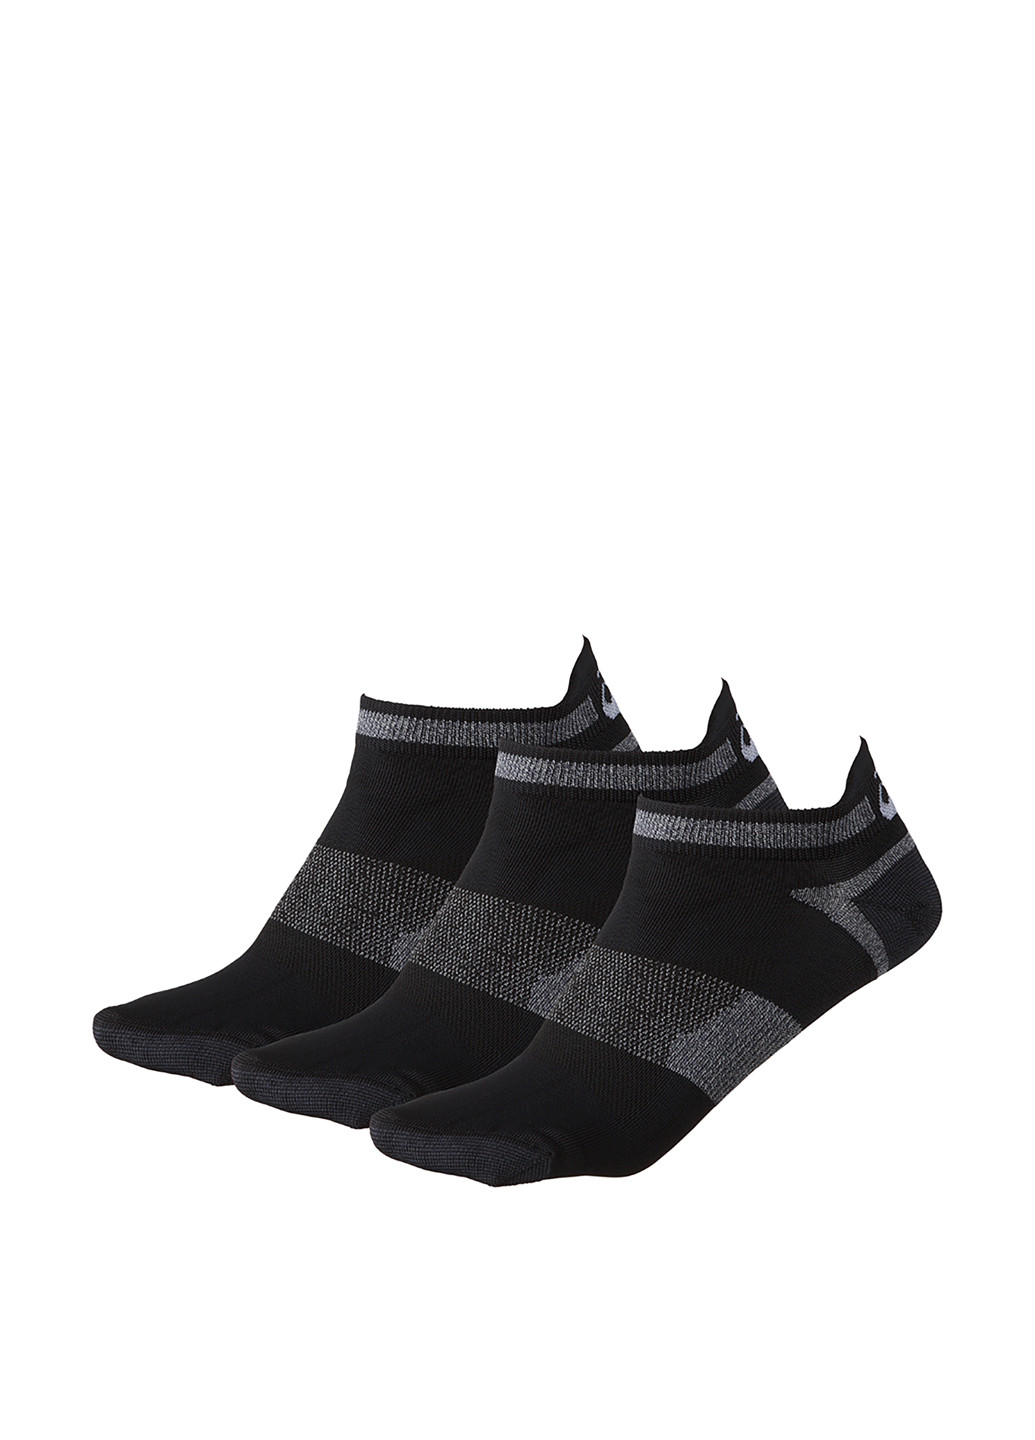 Носки (3 пары) Asics геометрические чёрные спортивные